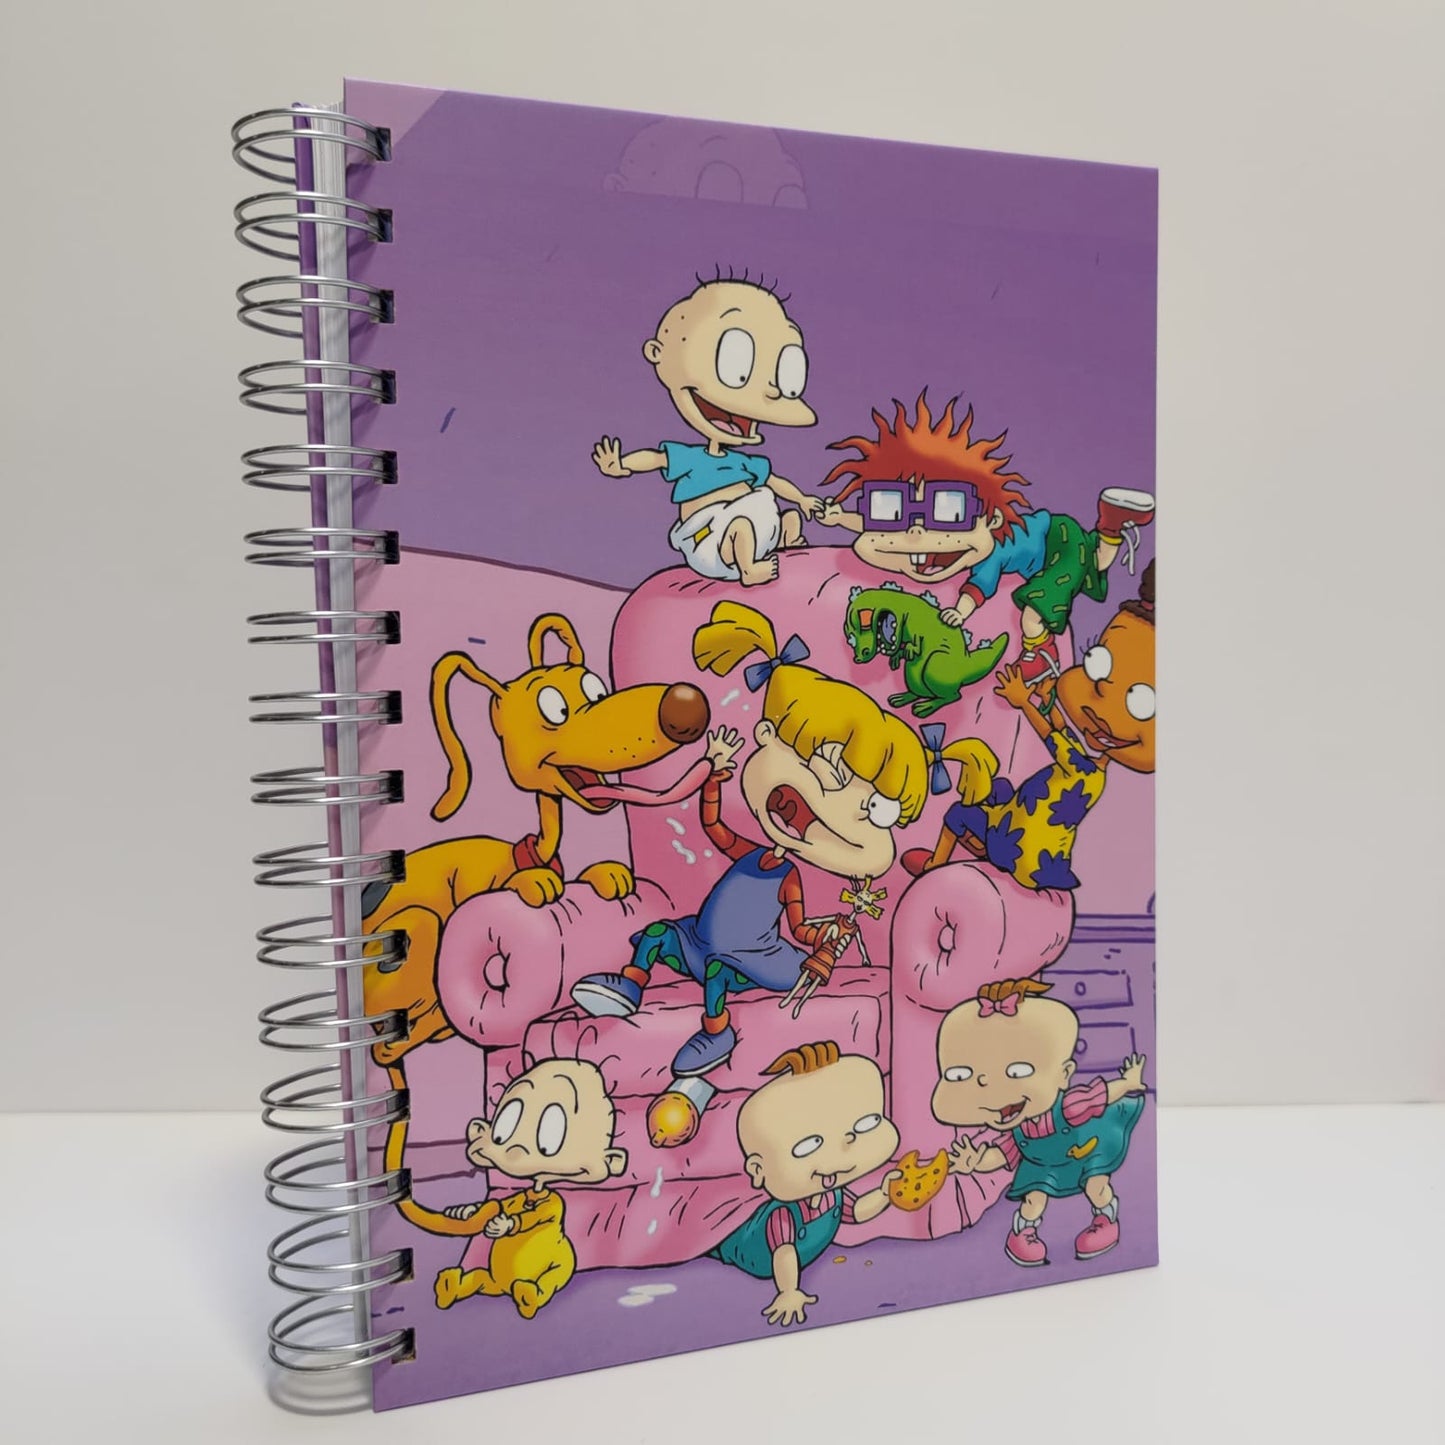 Cuaderno de Rugrats - Todos Juntos